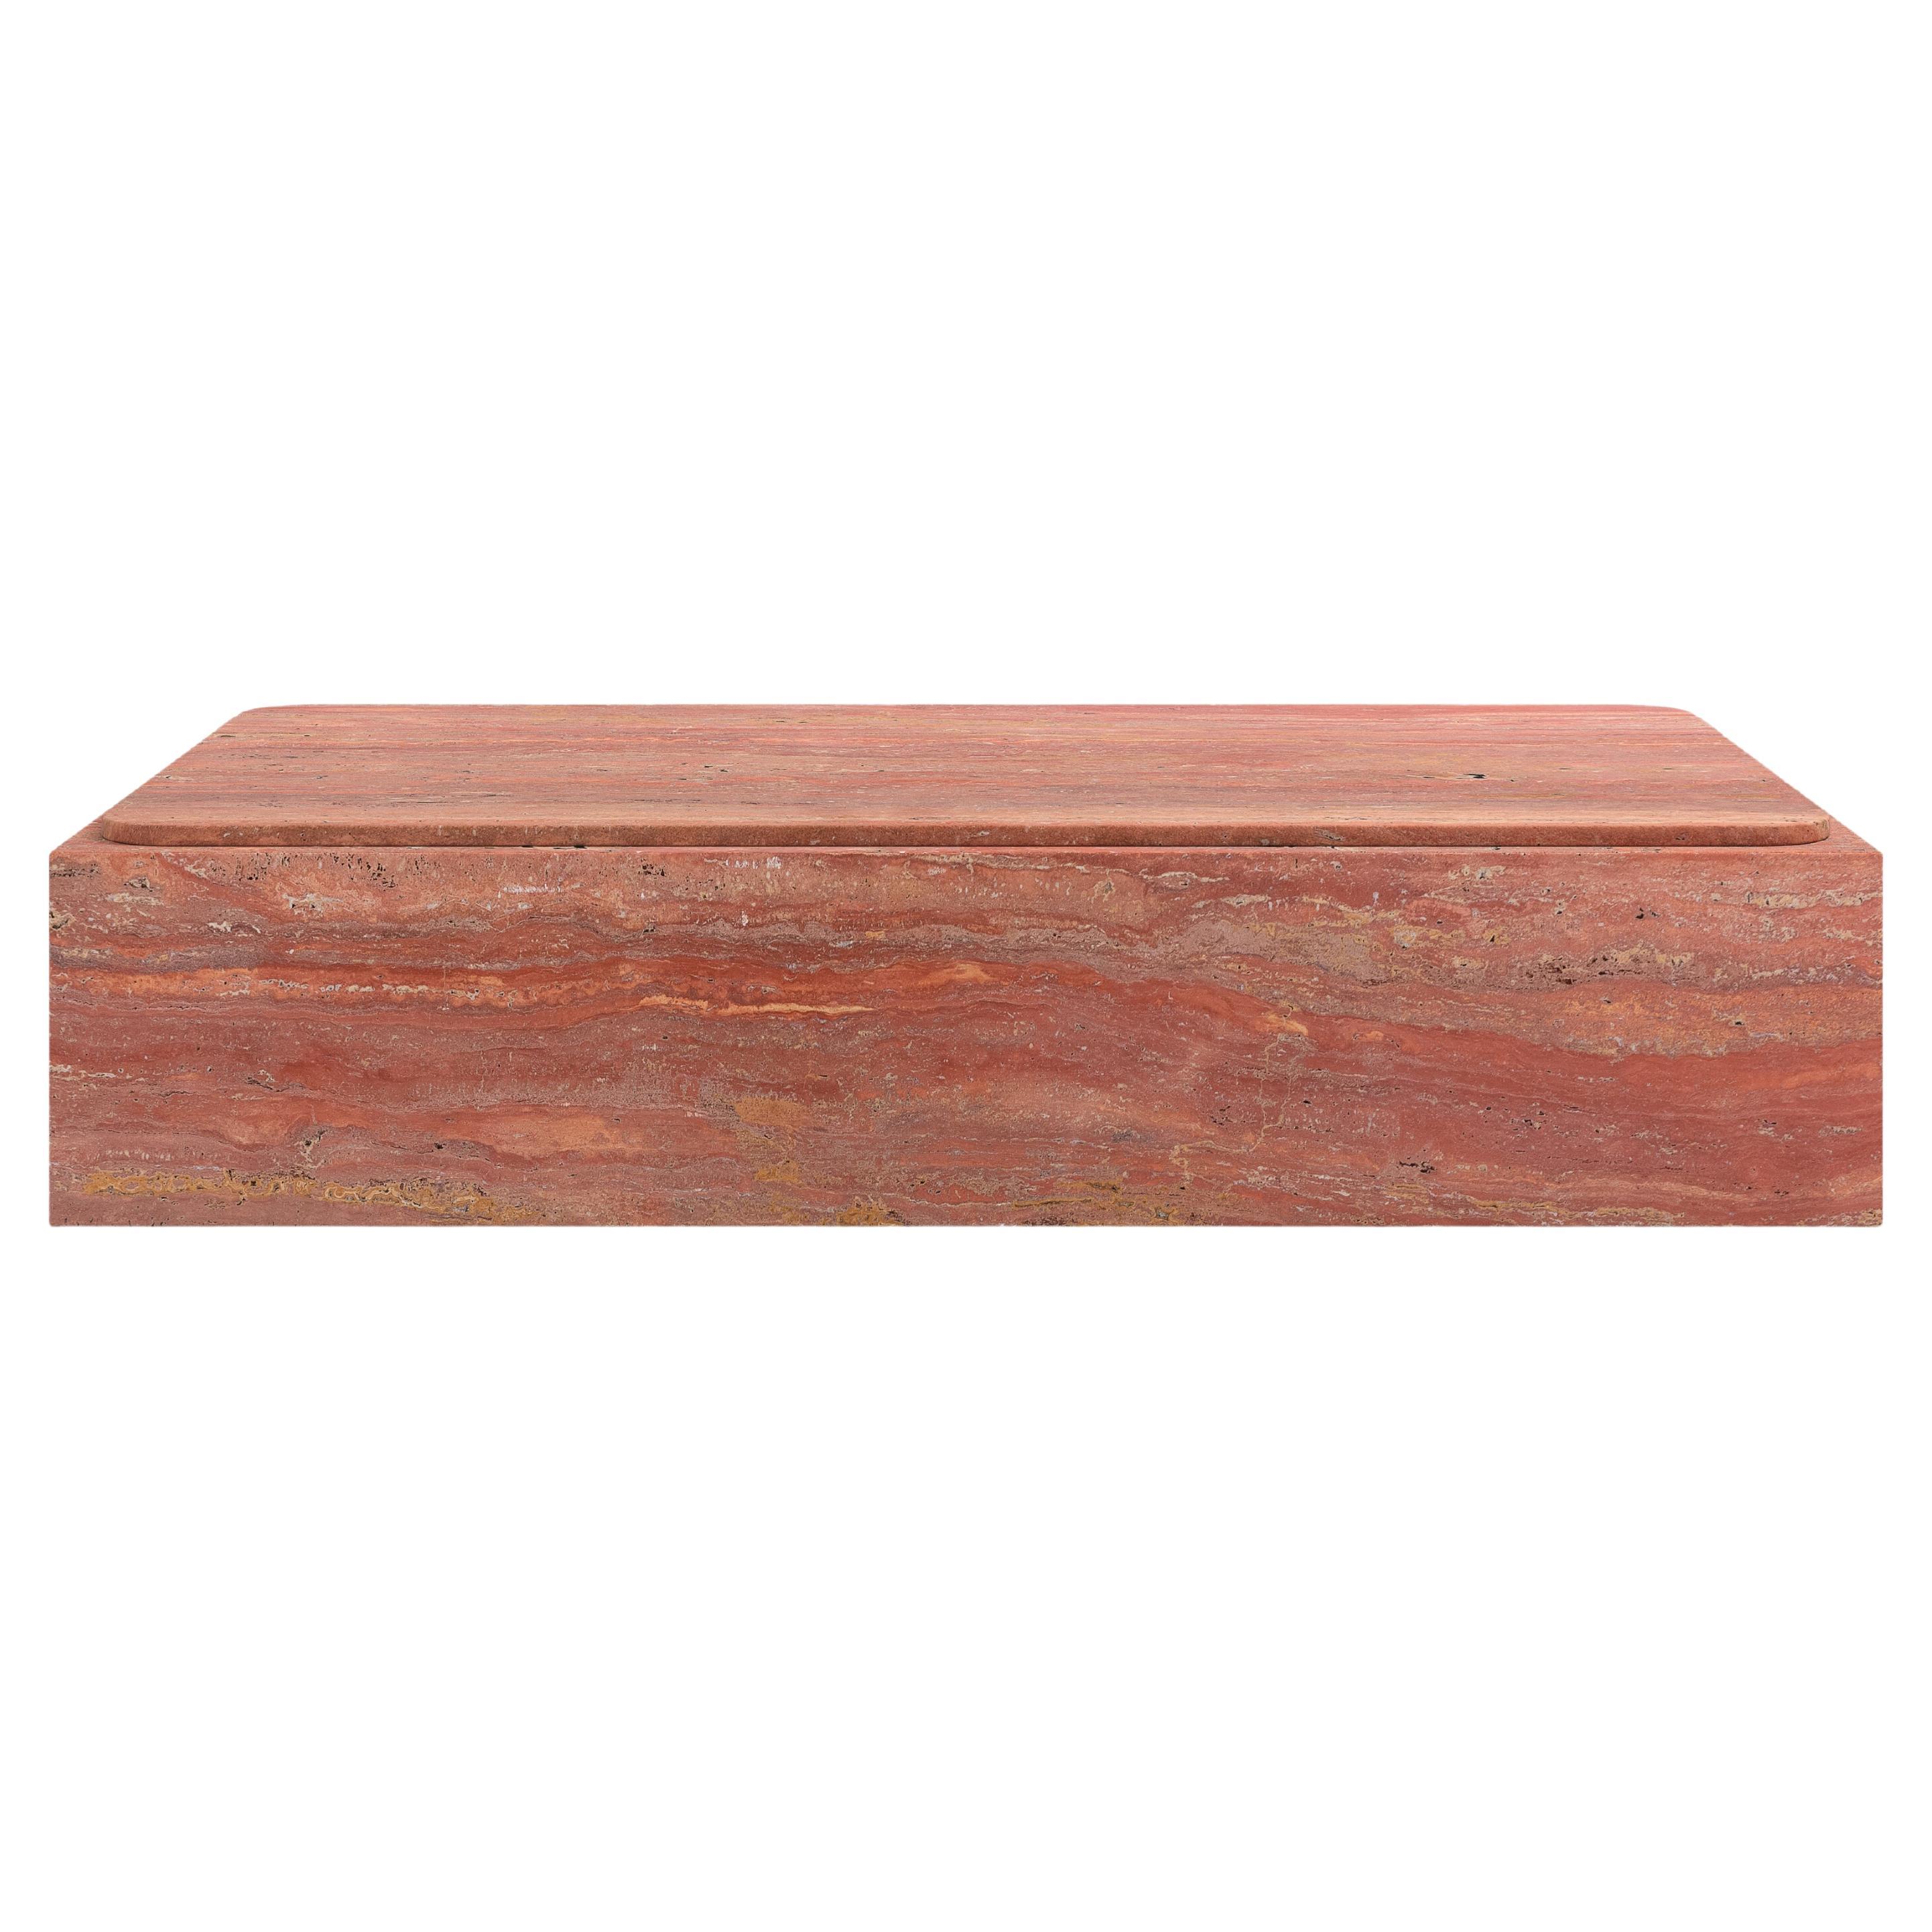 FORM(LA) Cubo Rectangle Plinth Coffee Table 60”L x 36”W x 13”H Travertino Rosso